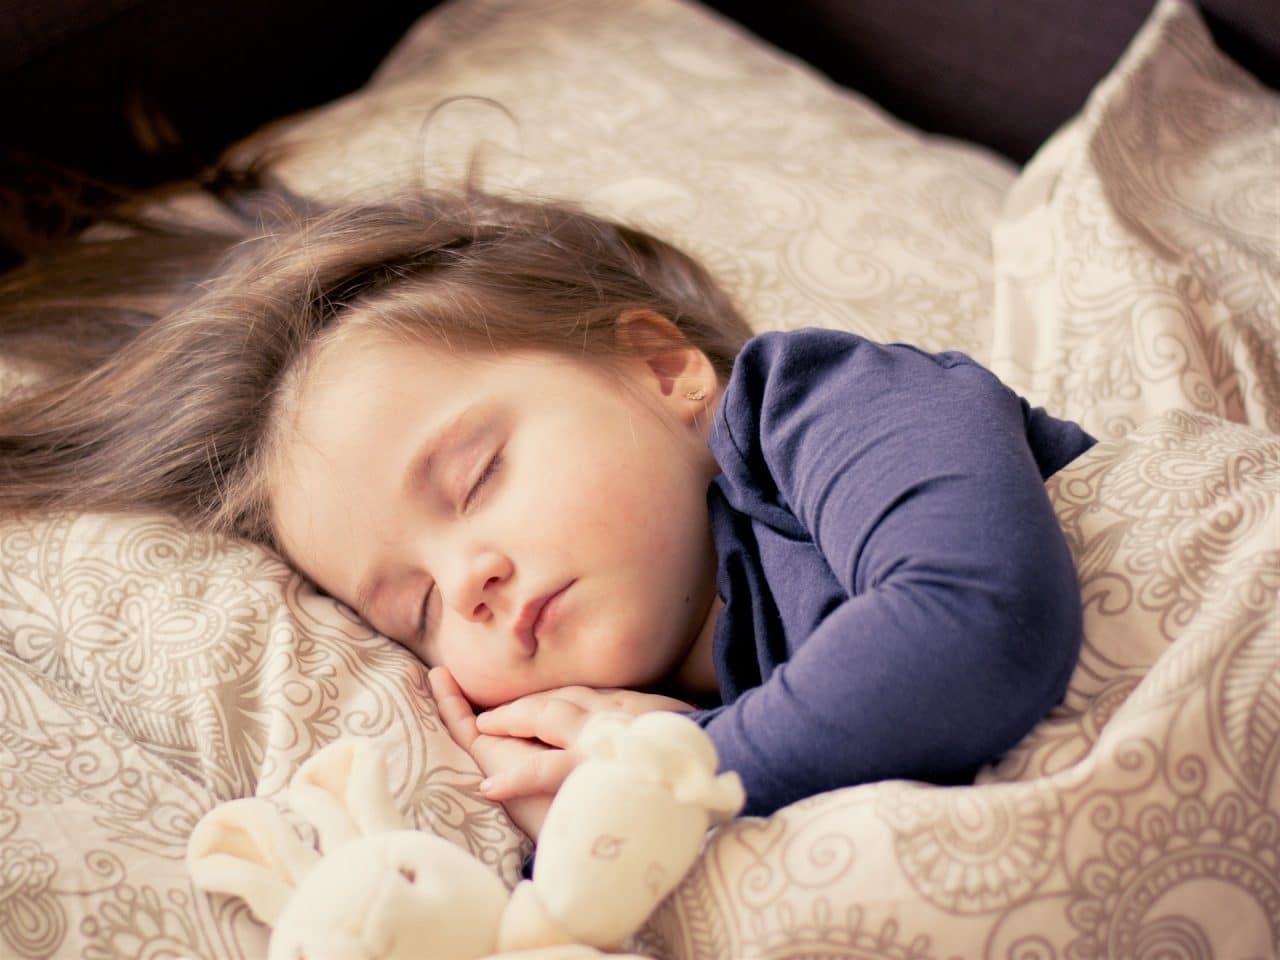 A child sleeping